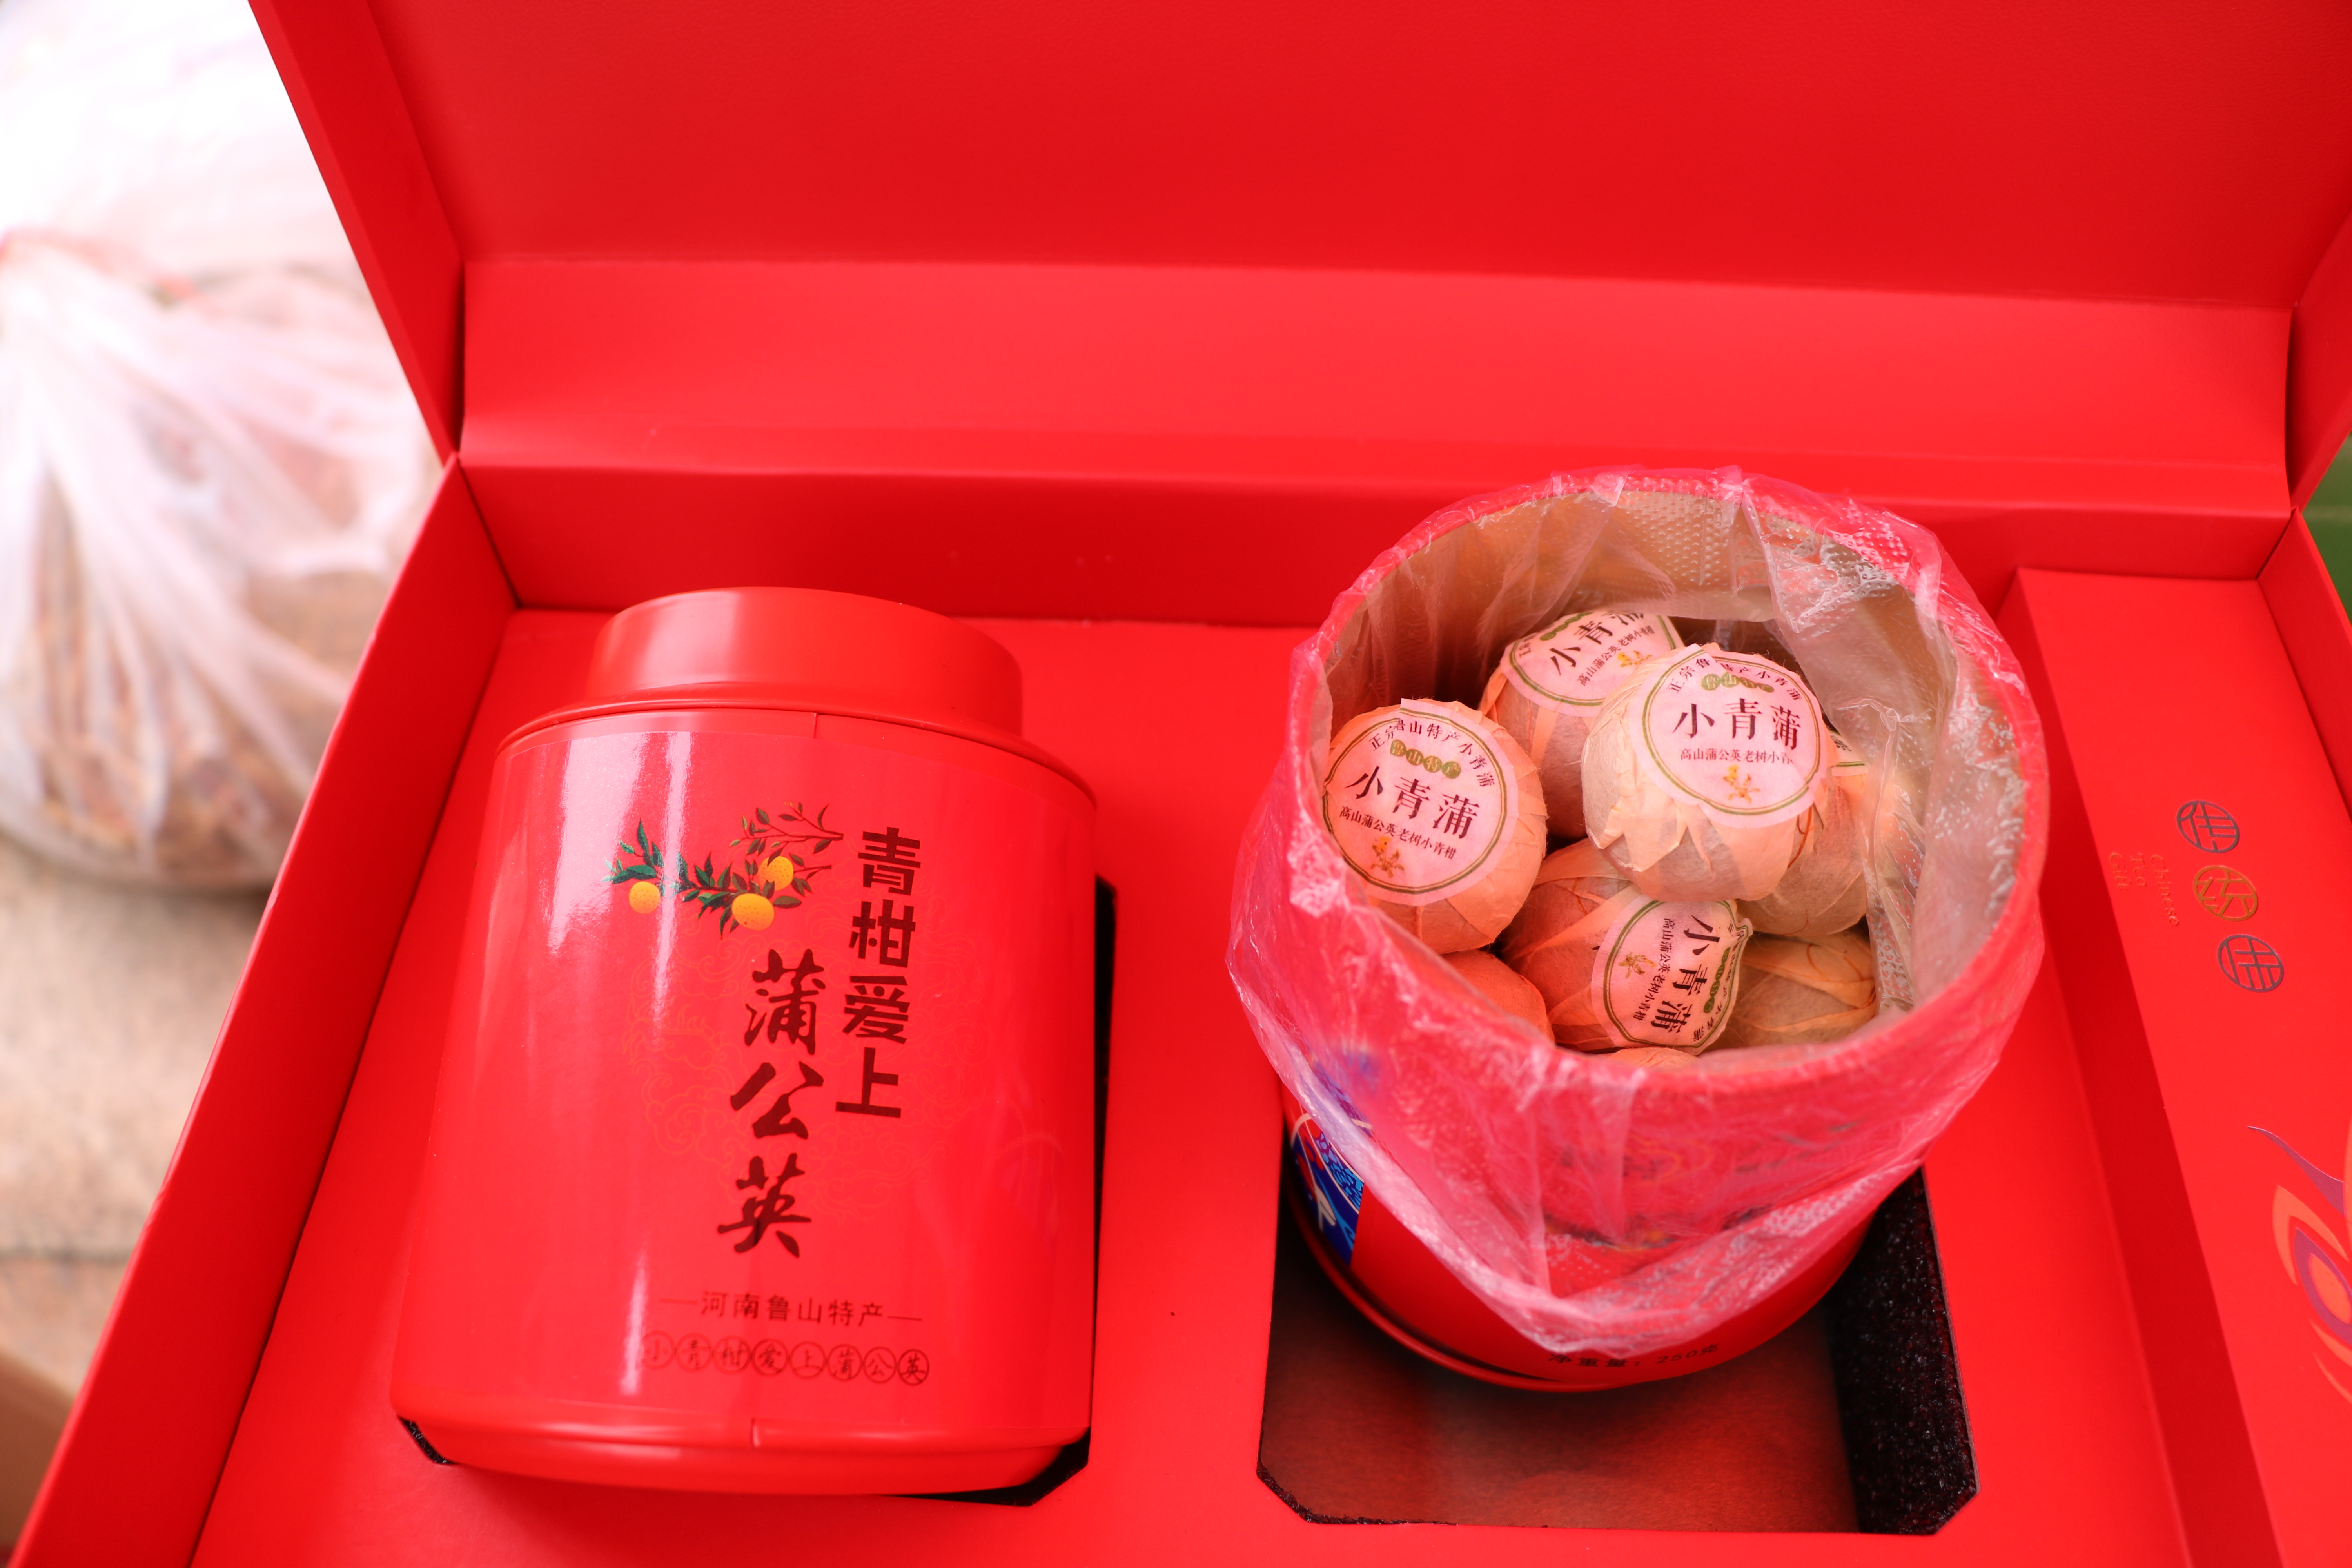 雷德华公司生产的小青蒲茶叶 摄影 乔新强